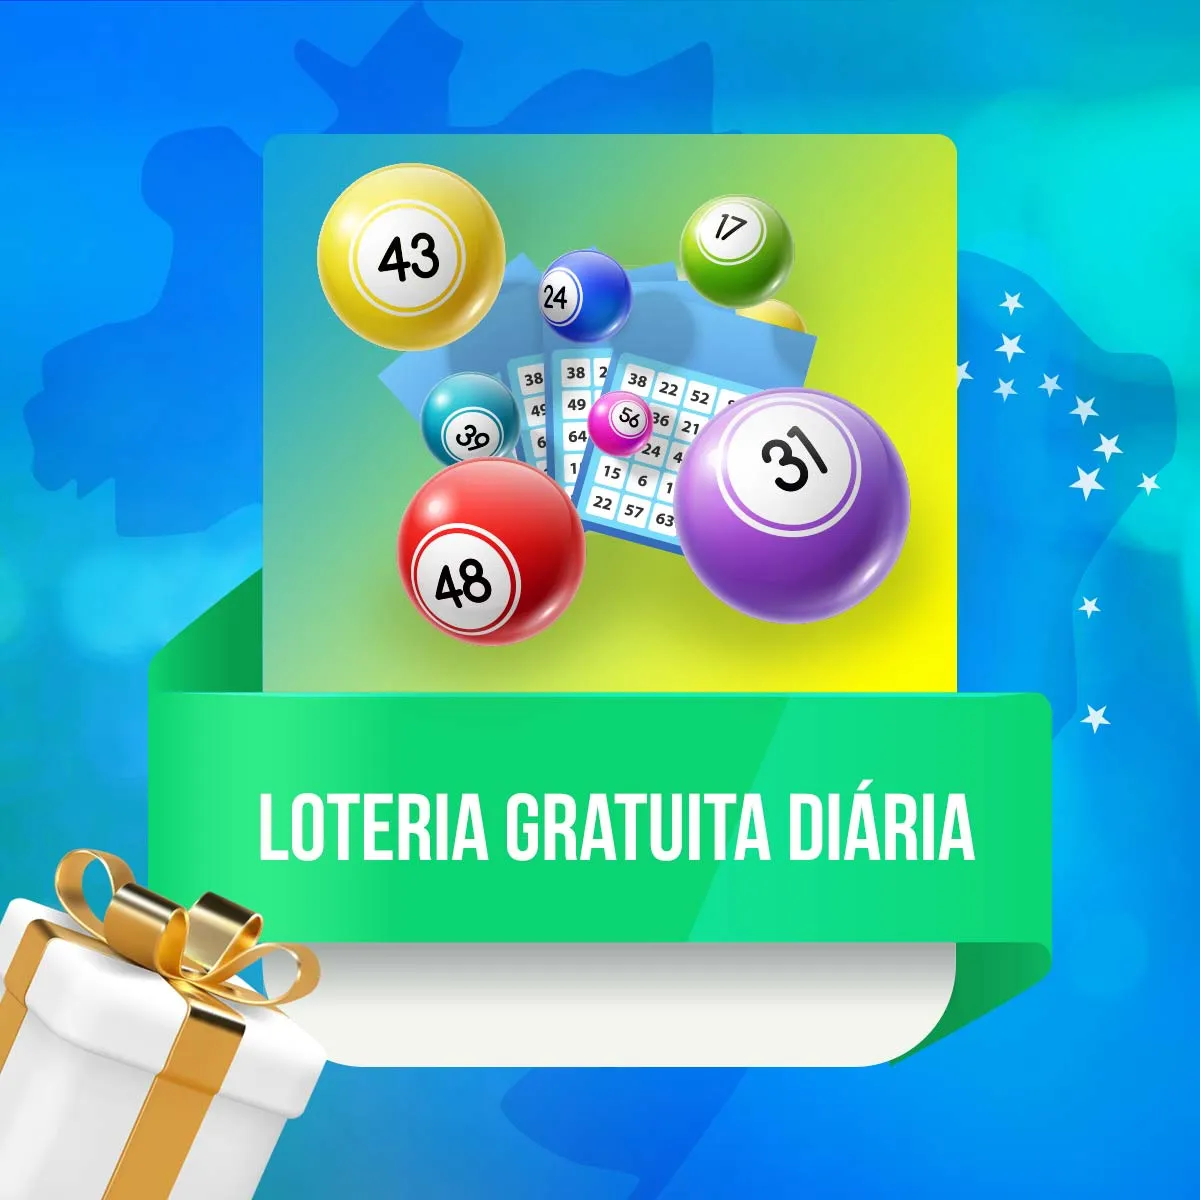 Loteria gratuita diária da casa de apostas 1win no Brasil